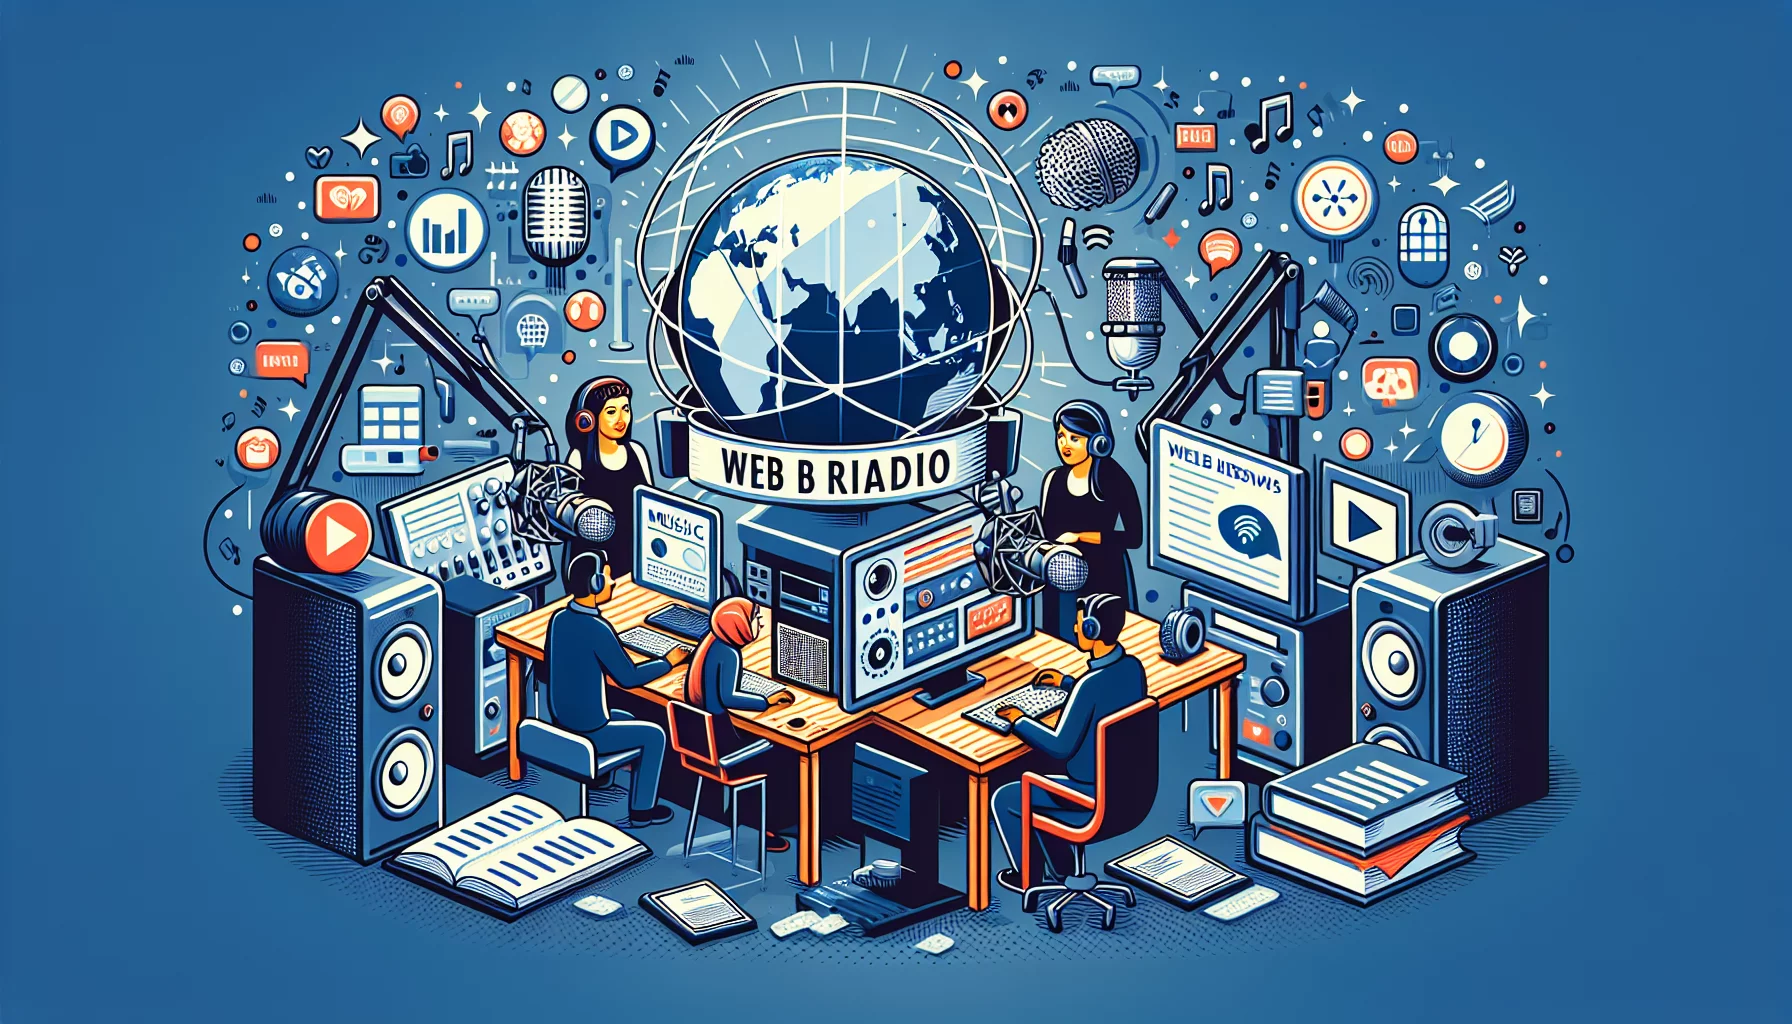 Comment faire pour créer des émissions de webradio thématiques?